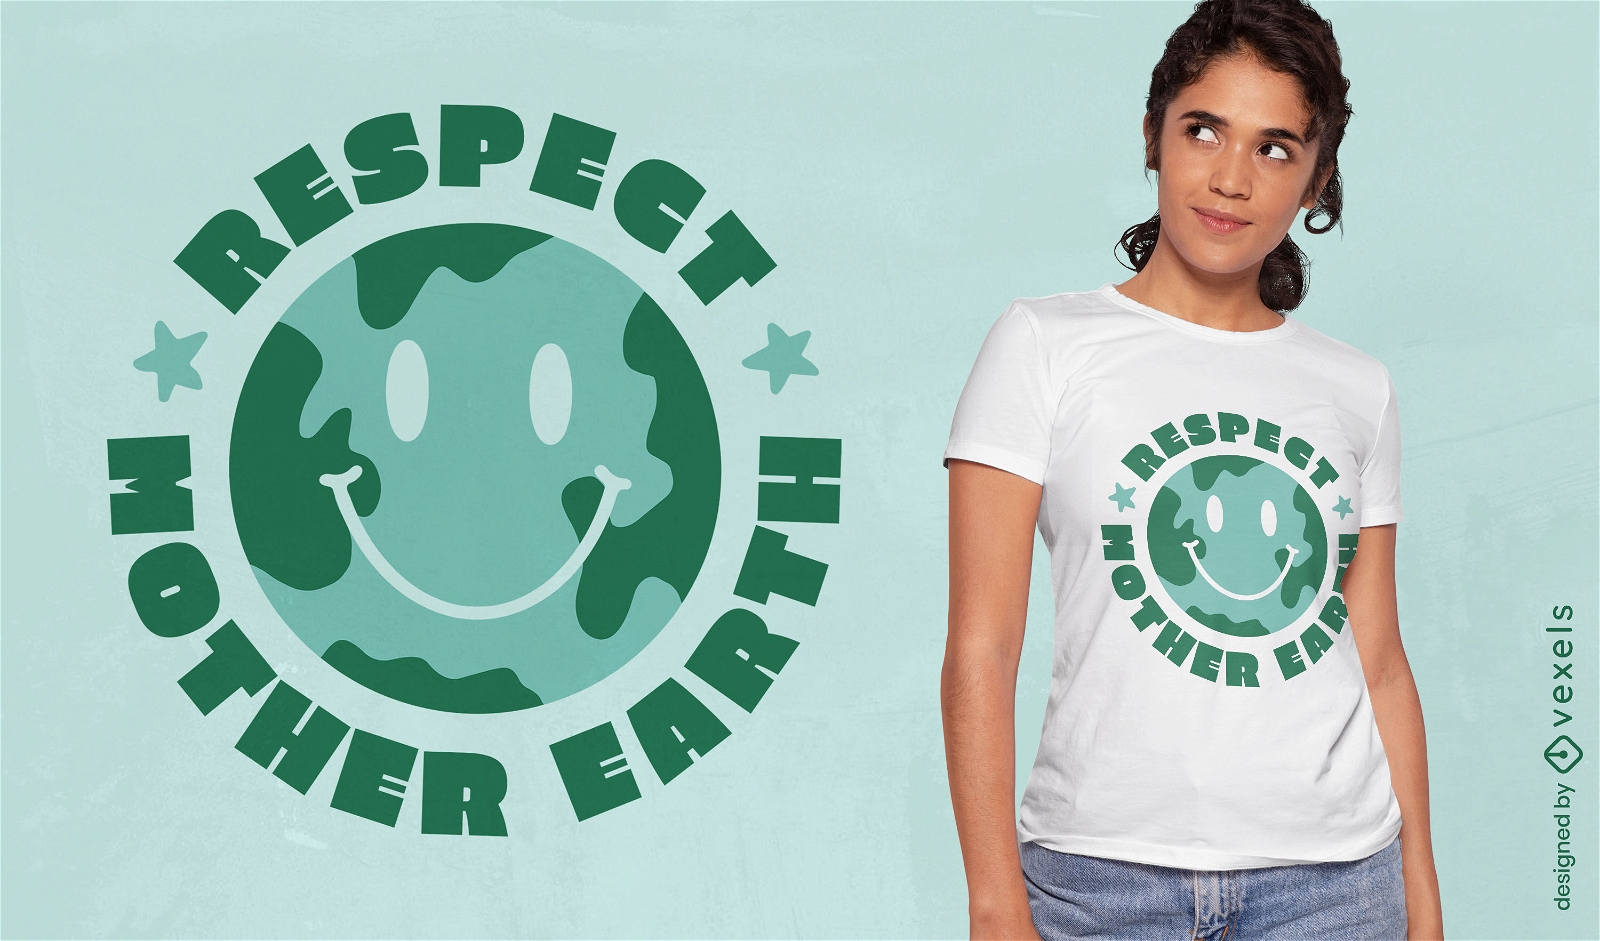 Respeite o design da camiseta com letras da Mãe Terra